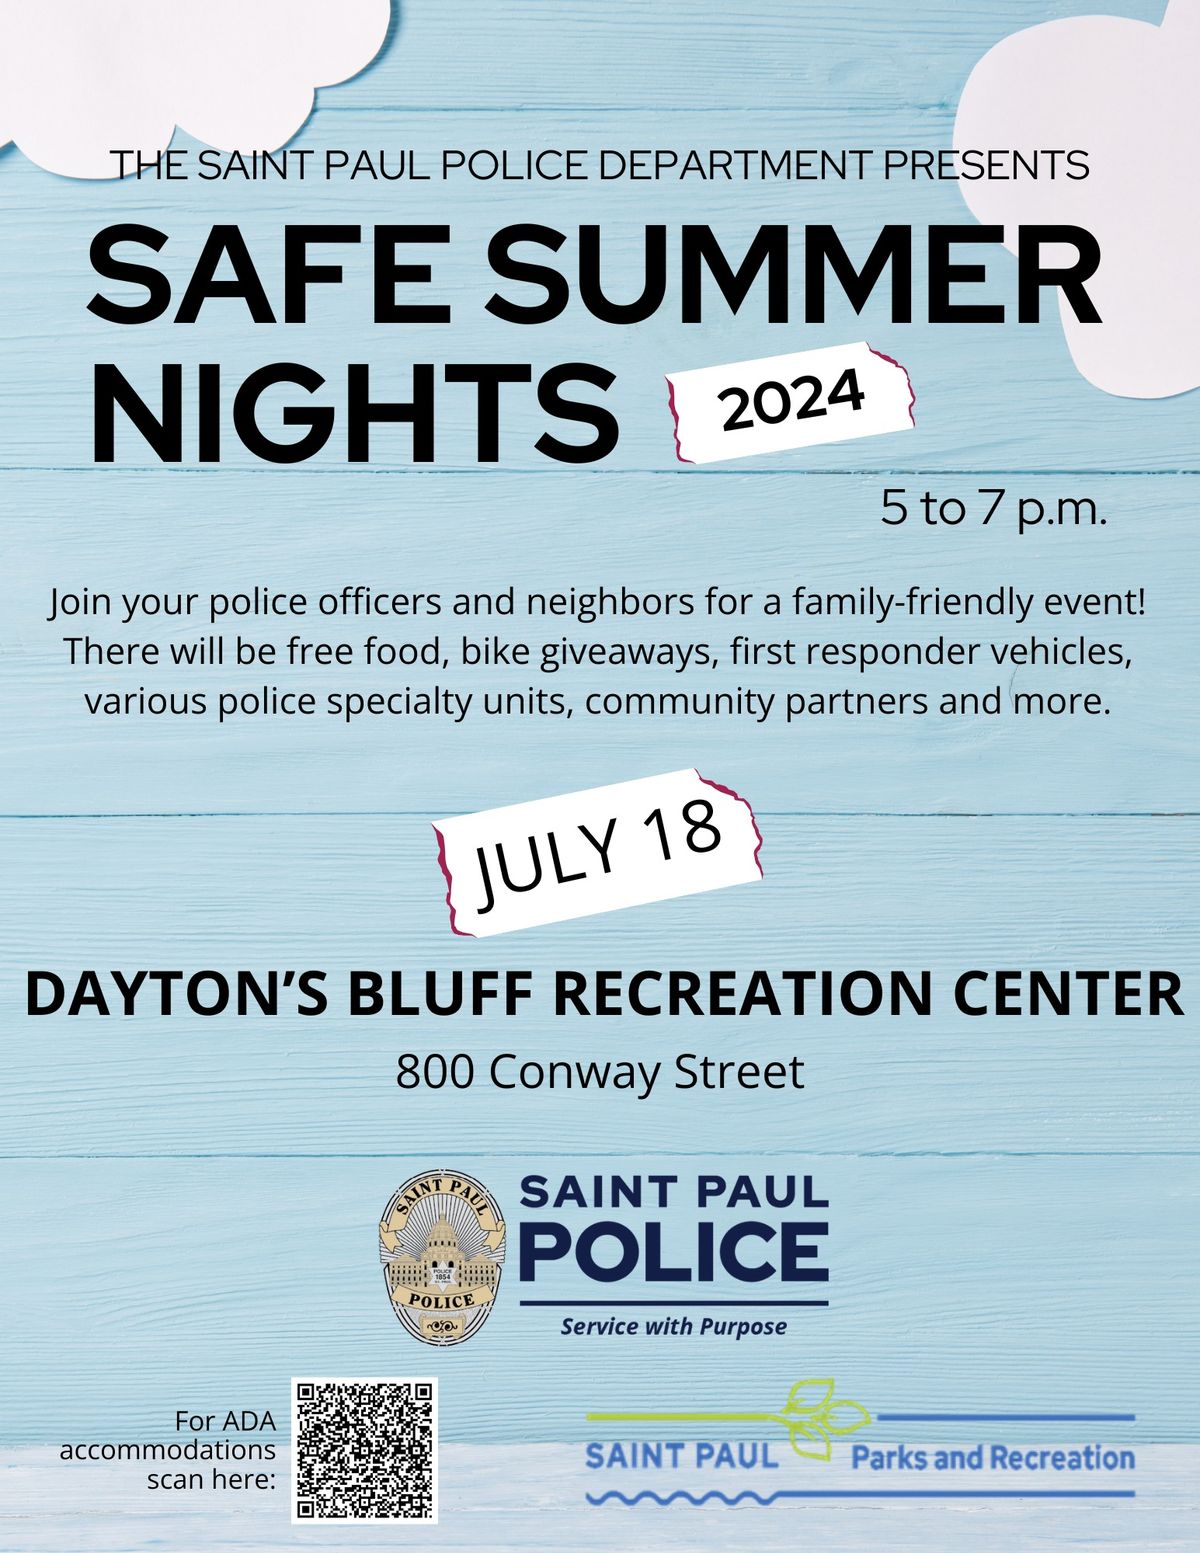 Safe Summer Nights (Dayton's Bluff)